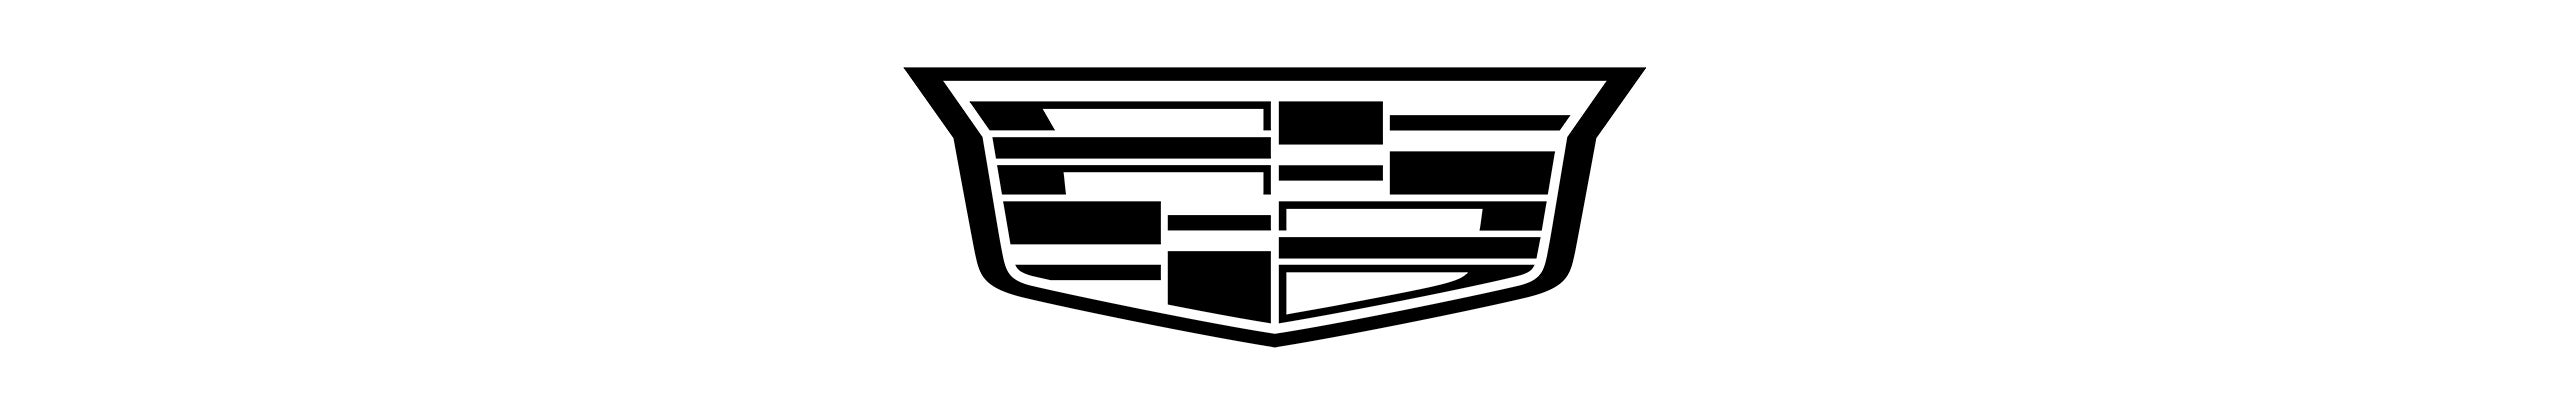 Cadillac logo cadillac fl